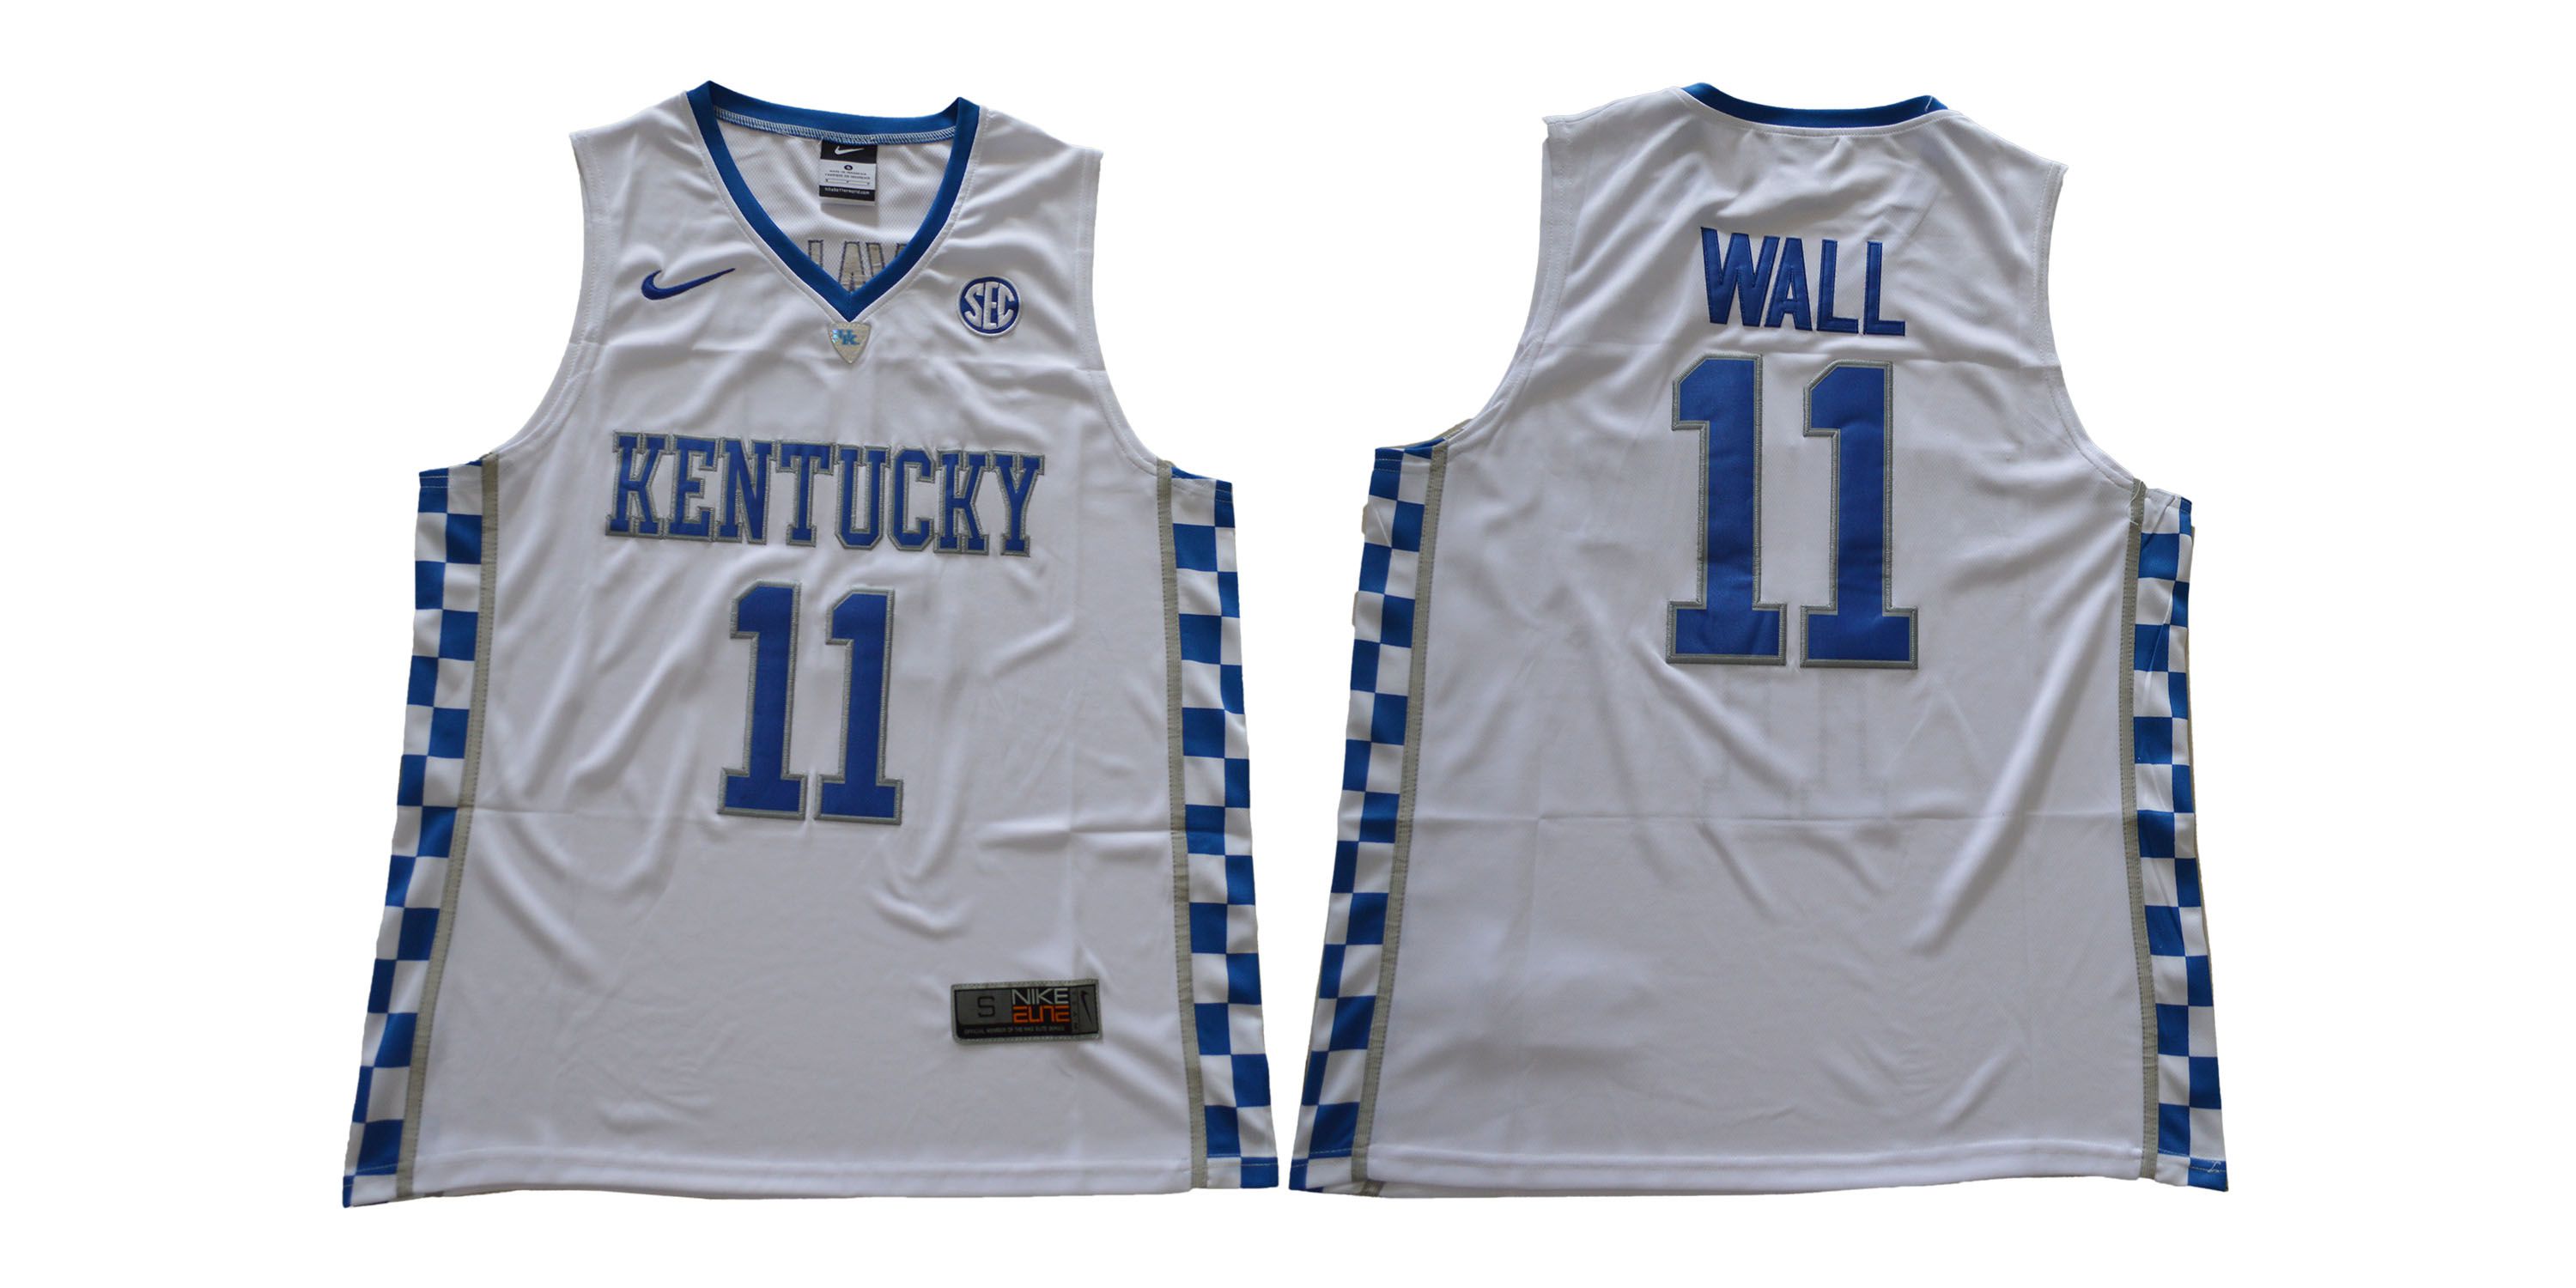 Men Kentucky Wildcats 11 Wall White NCAA Jerseys